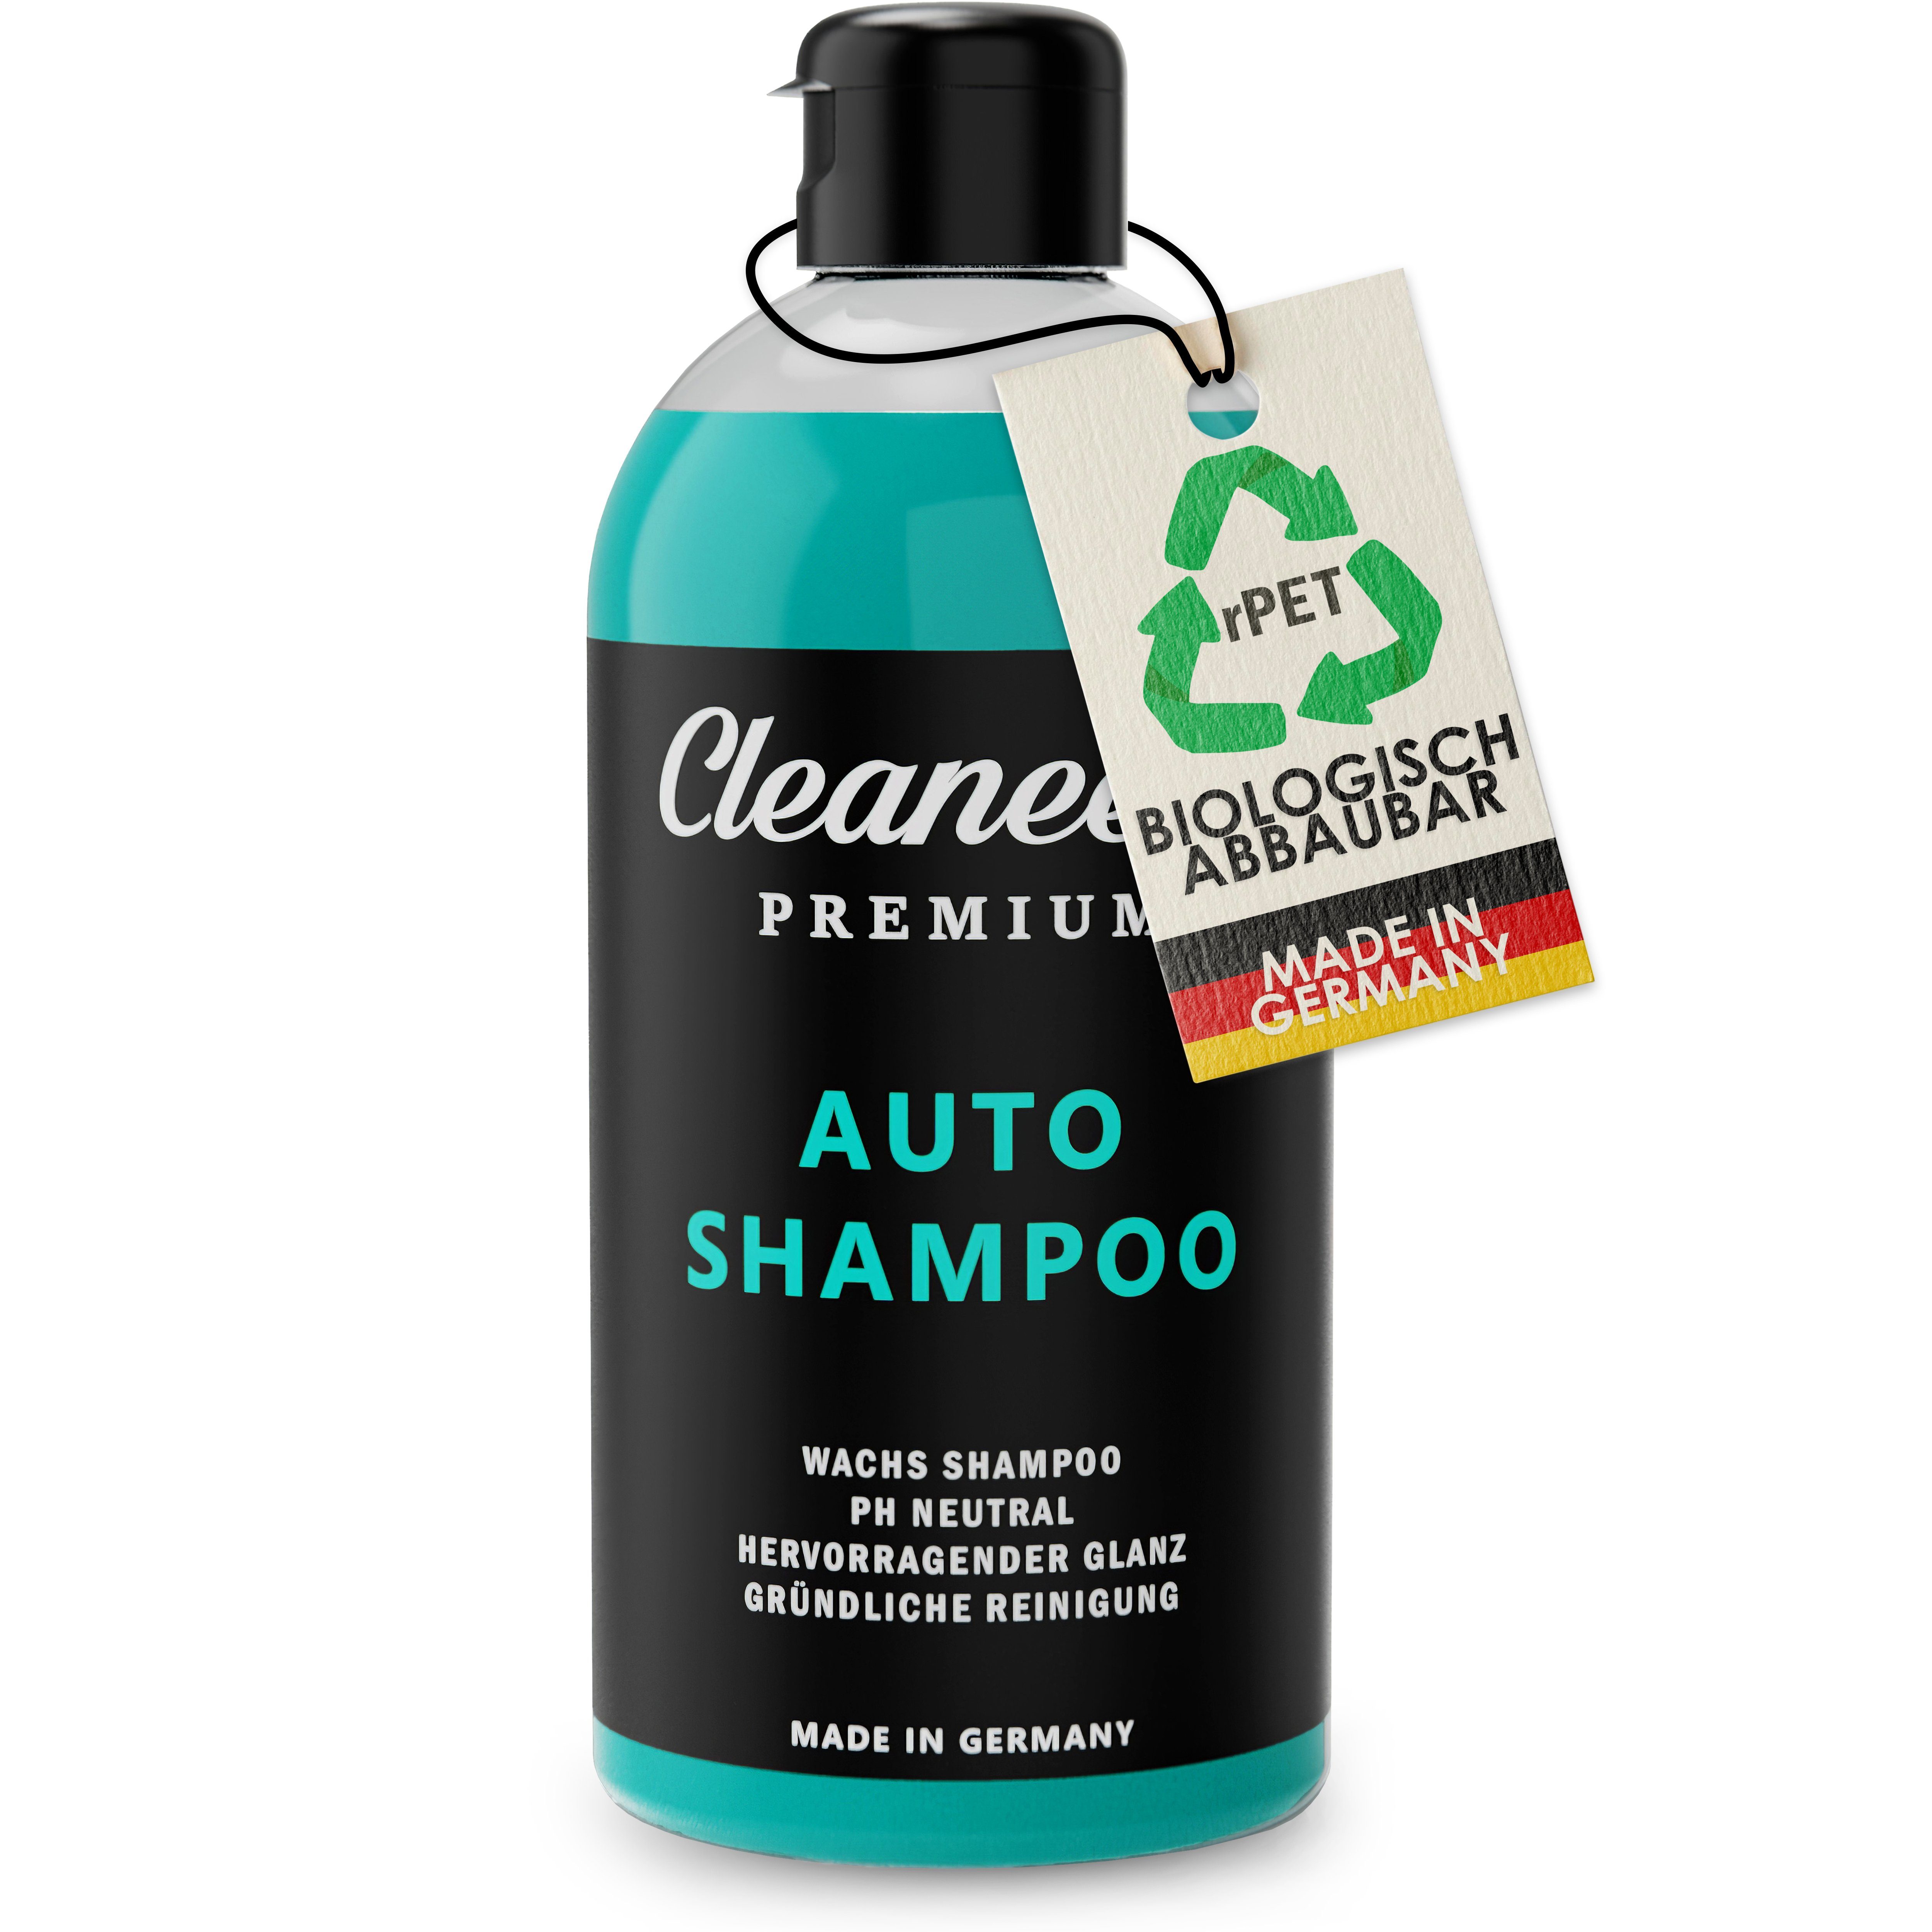 Cleaneed Premium Autoshampoo mit Wachs Autoshampoo (MADE in GERMANY –  pH-Neutral, Rückstandsfrei, Schonende Reinigung, Starke Schaumbildung,  Biologisch abbaubar)